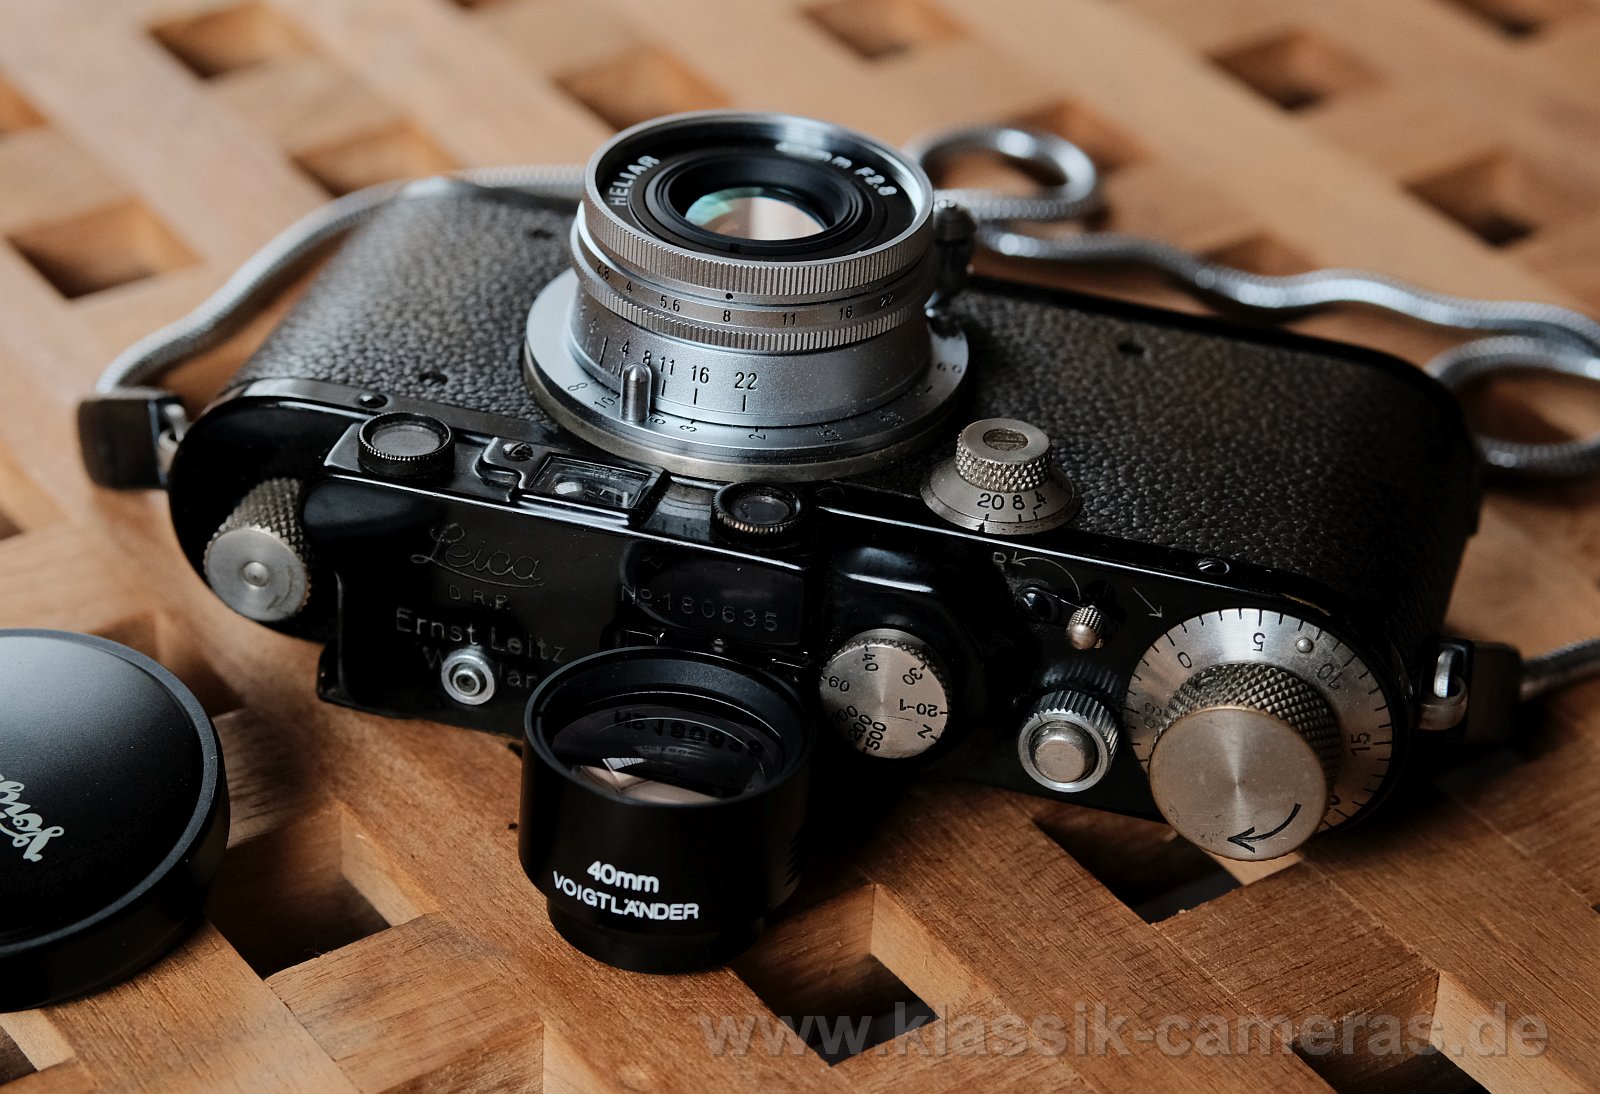 DSCF9485-LeicaIII-VL40mm.jpg